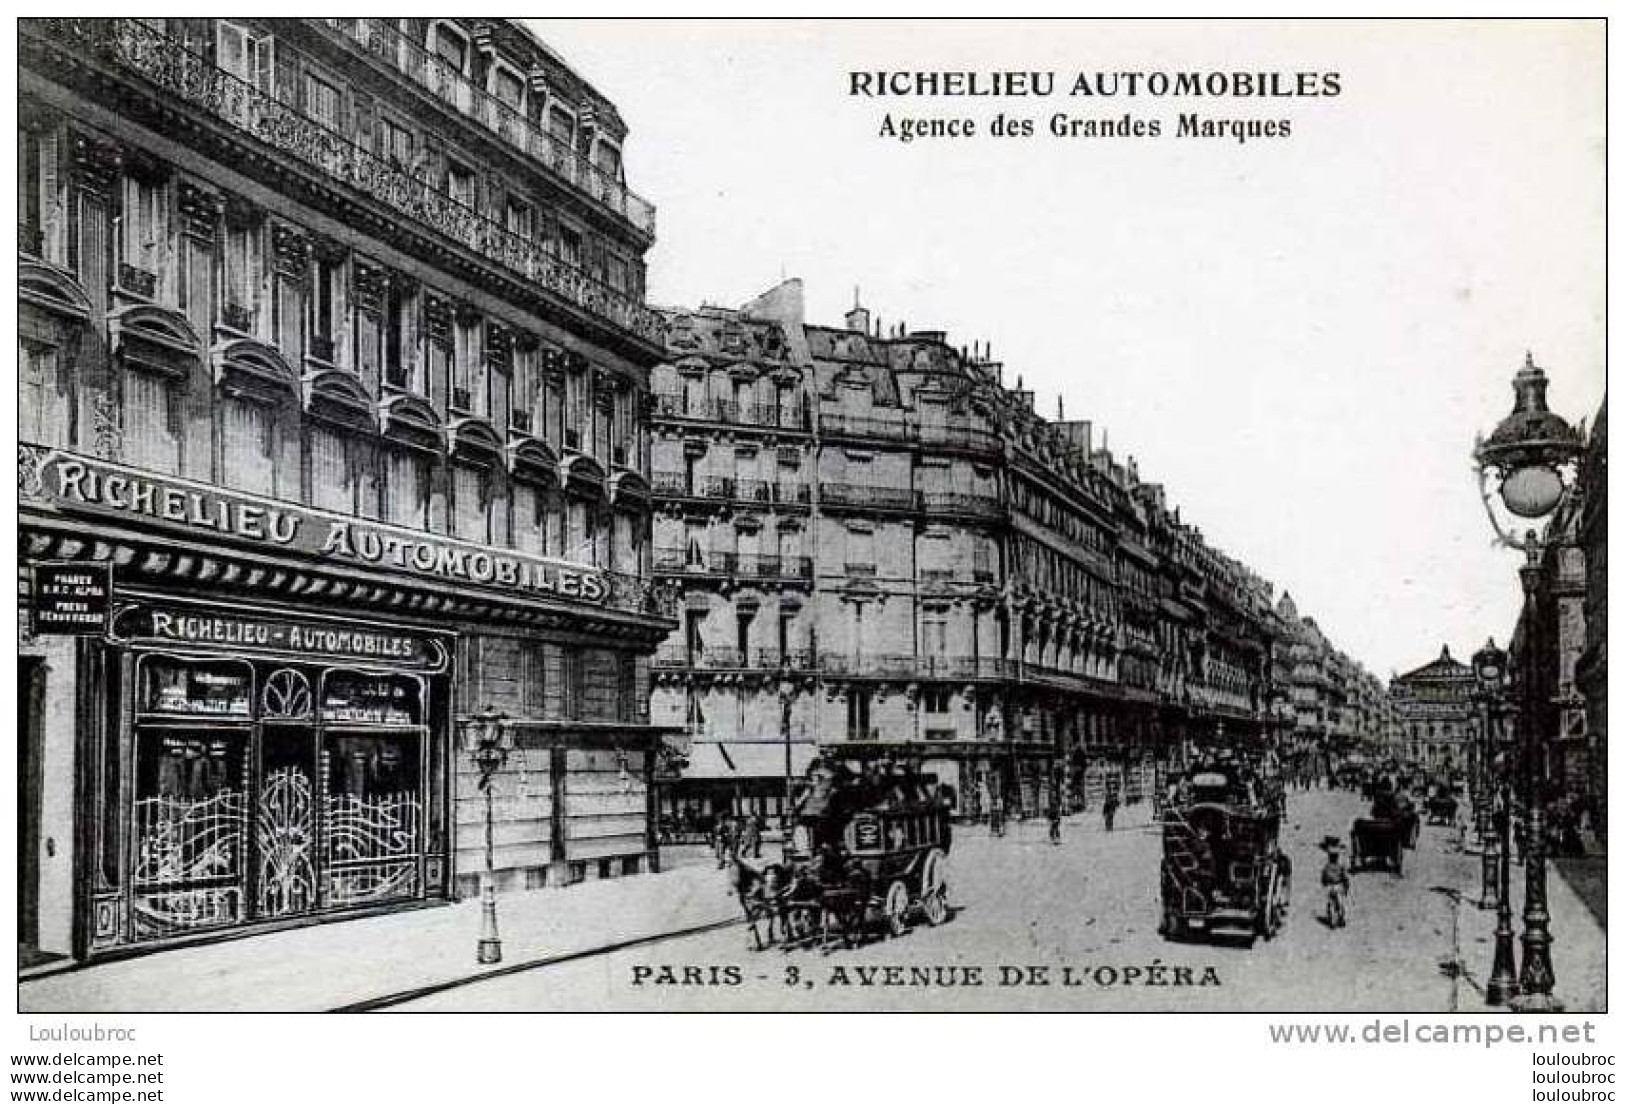 75 PARIS RICHELIEU AUTOMOBILES AGENCE DE GRANDES MARQUES 3 AVENUE DE L'OPERA - Paris (02)